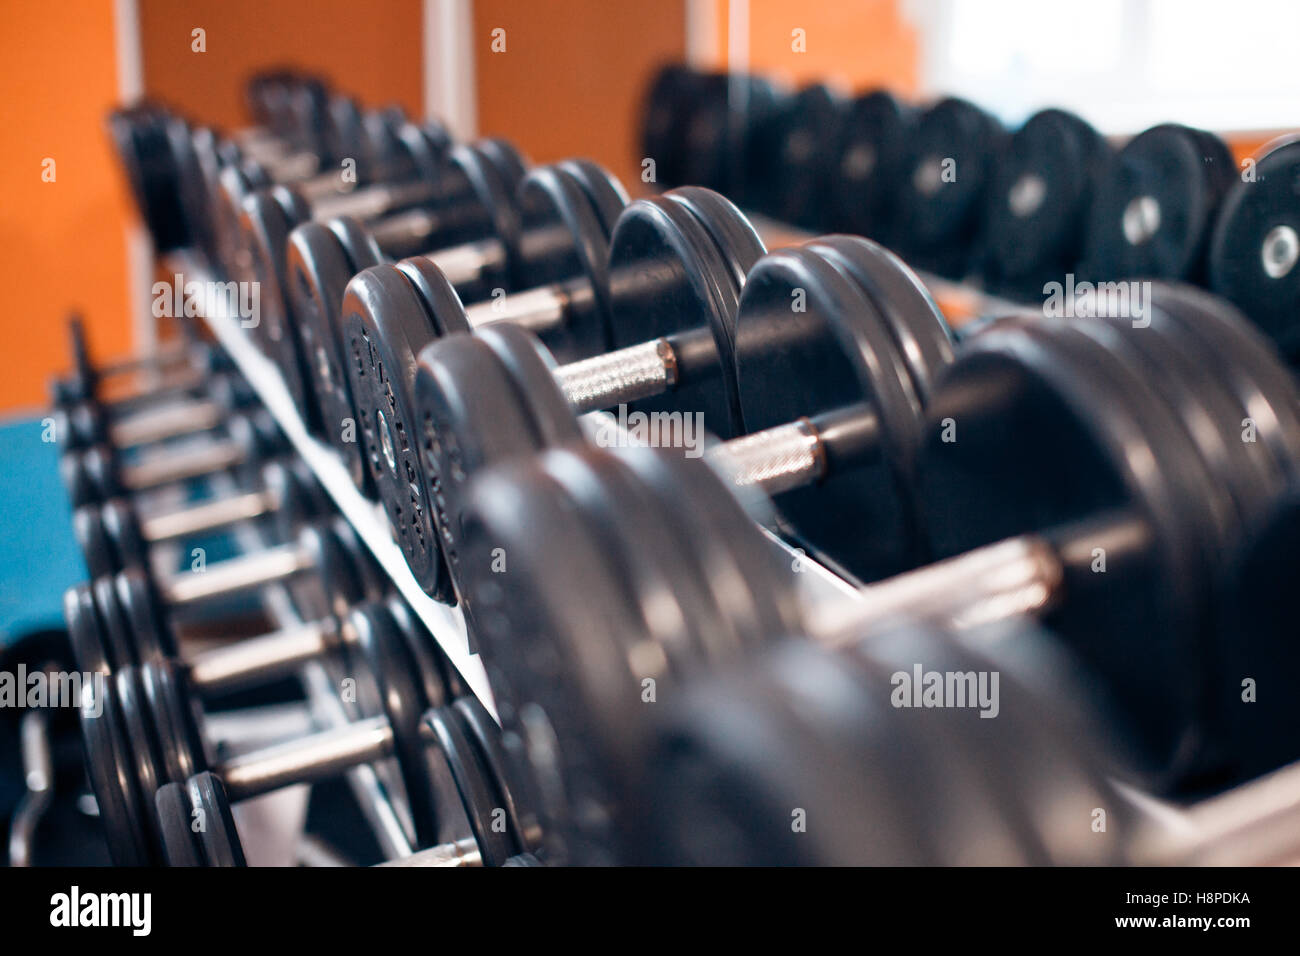 Consente di visualizzare le righe di pesi su un rack in palestra Foto Stock